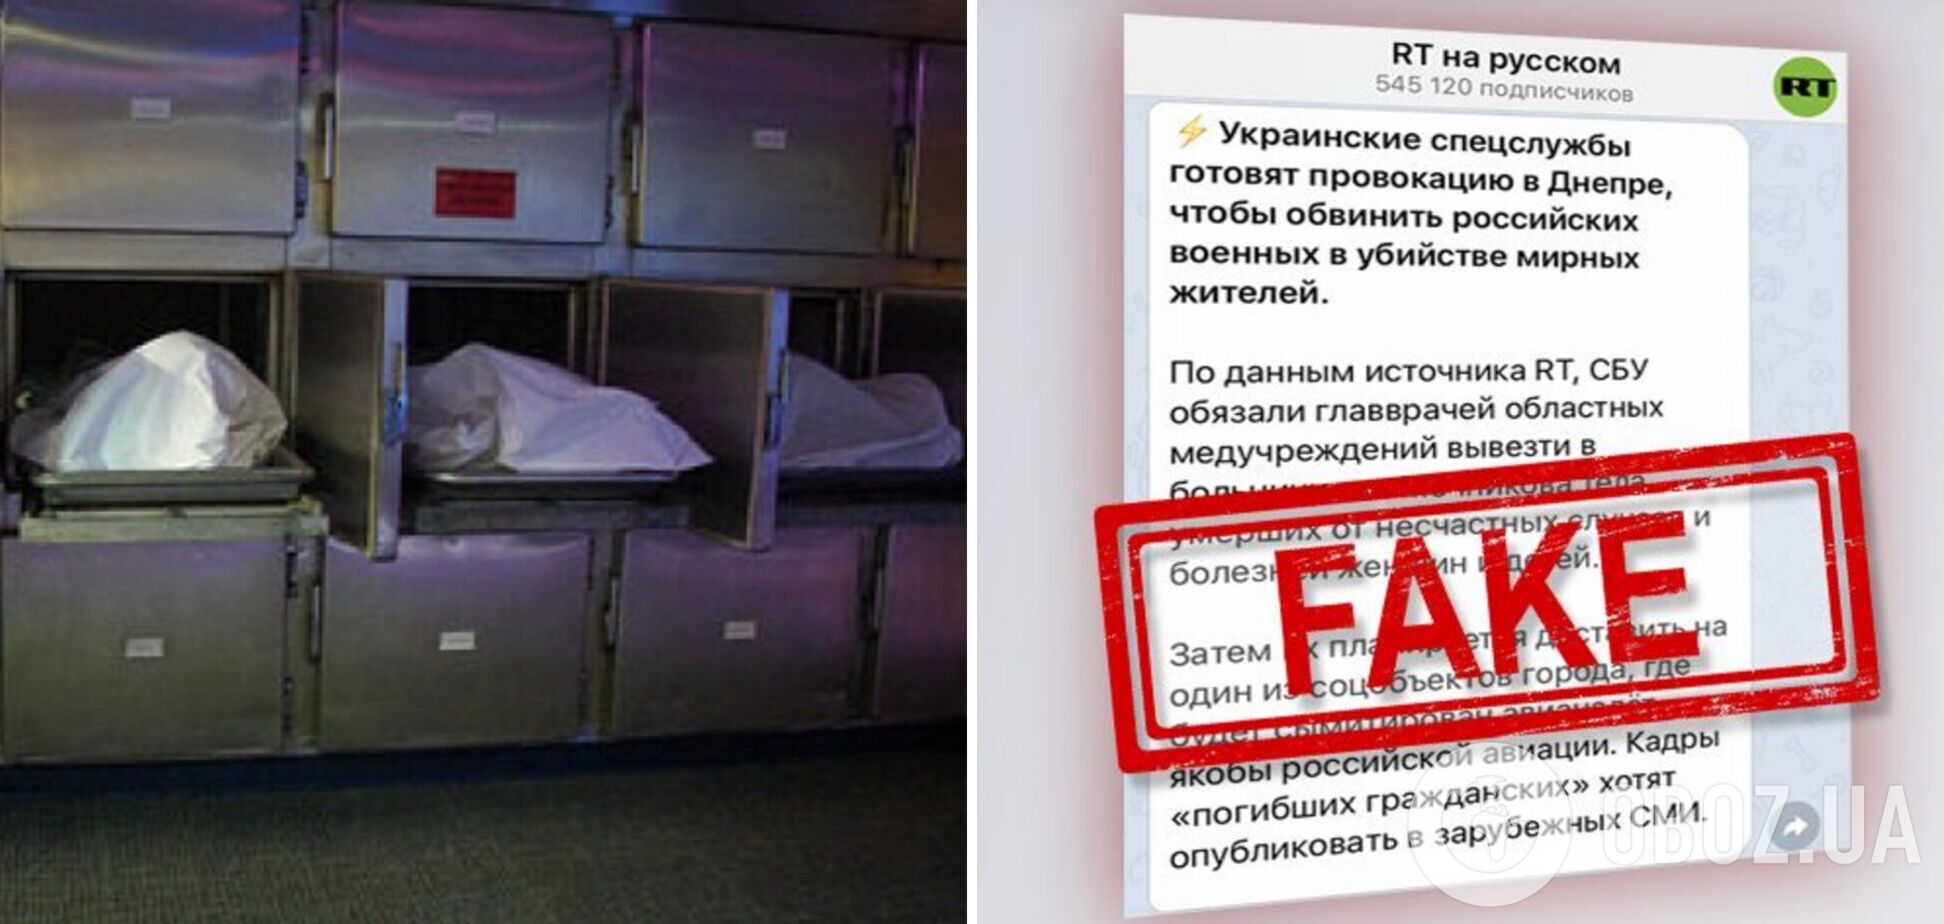 РФ распространила фейк о том, что СБУ в Днепре собирает тела женщин и детей для имитации авианалета